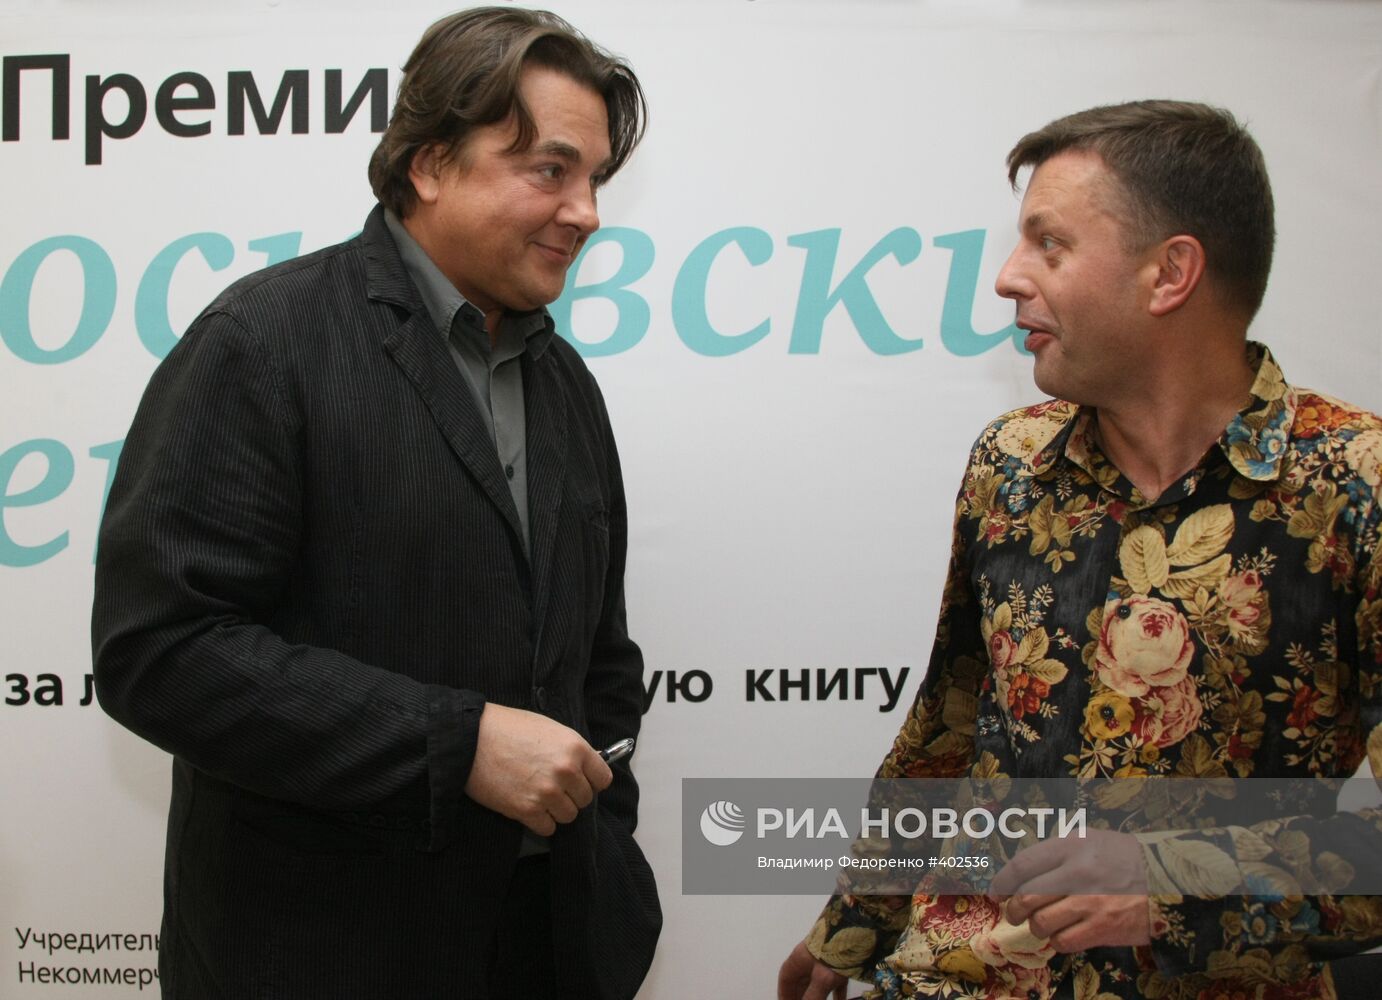 IV Московский международный открытый книжный фестиваль